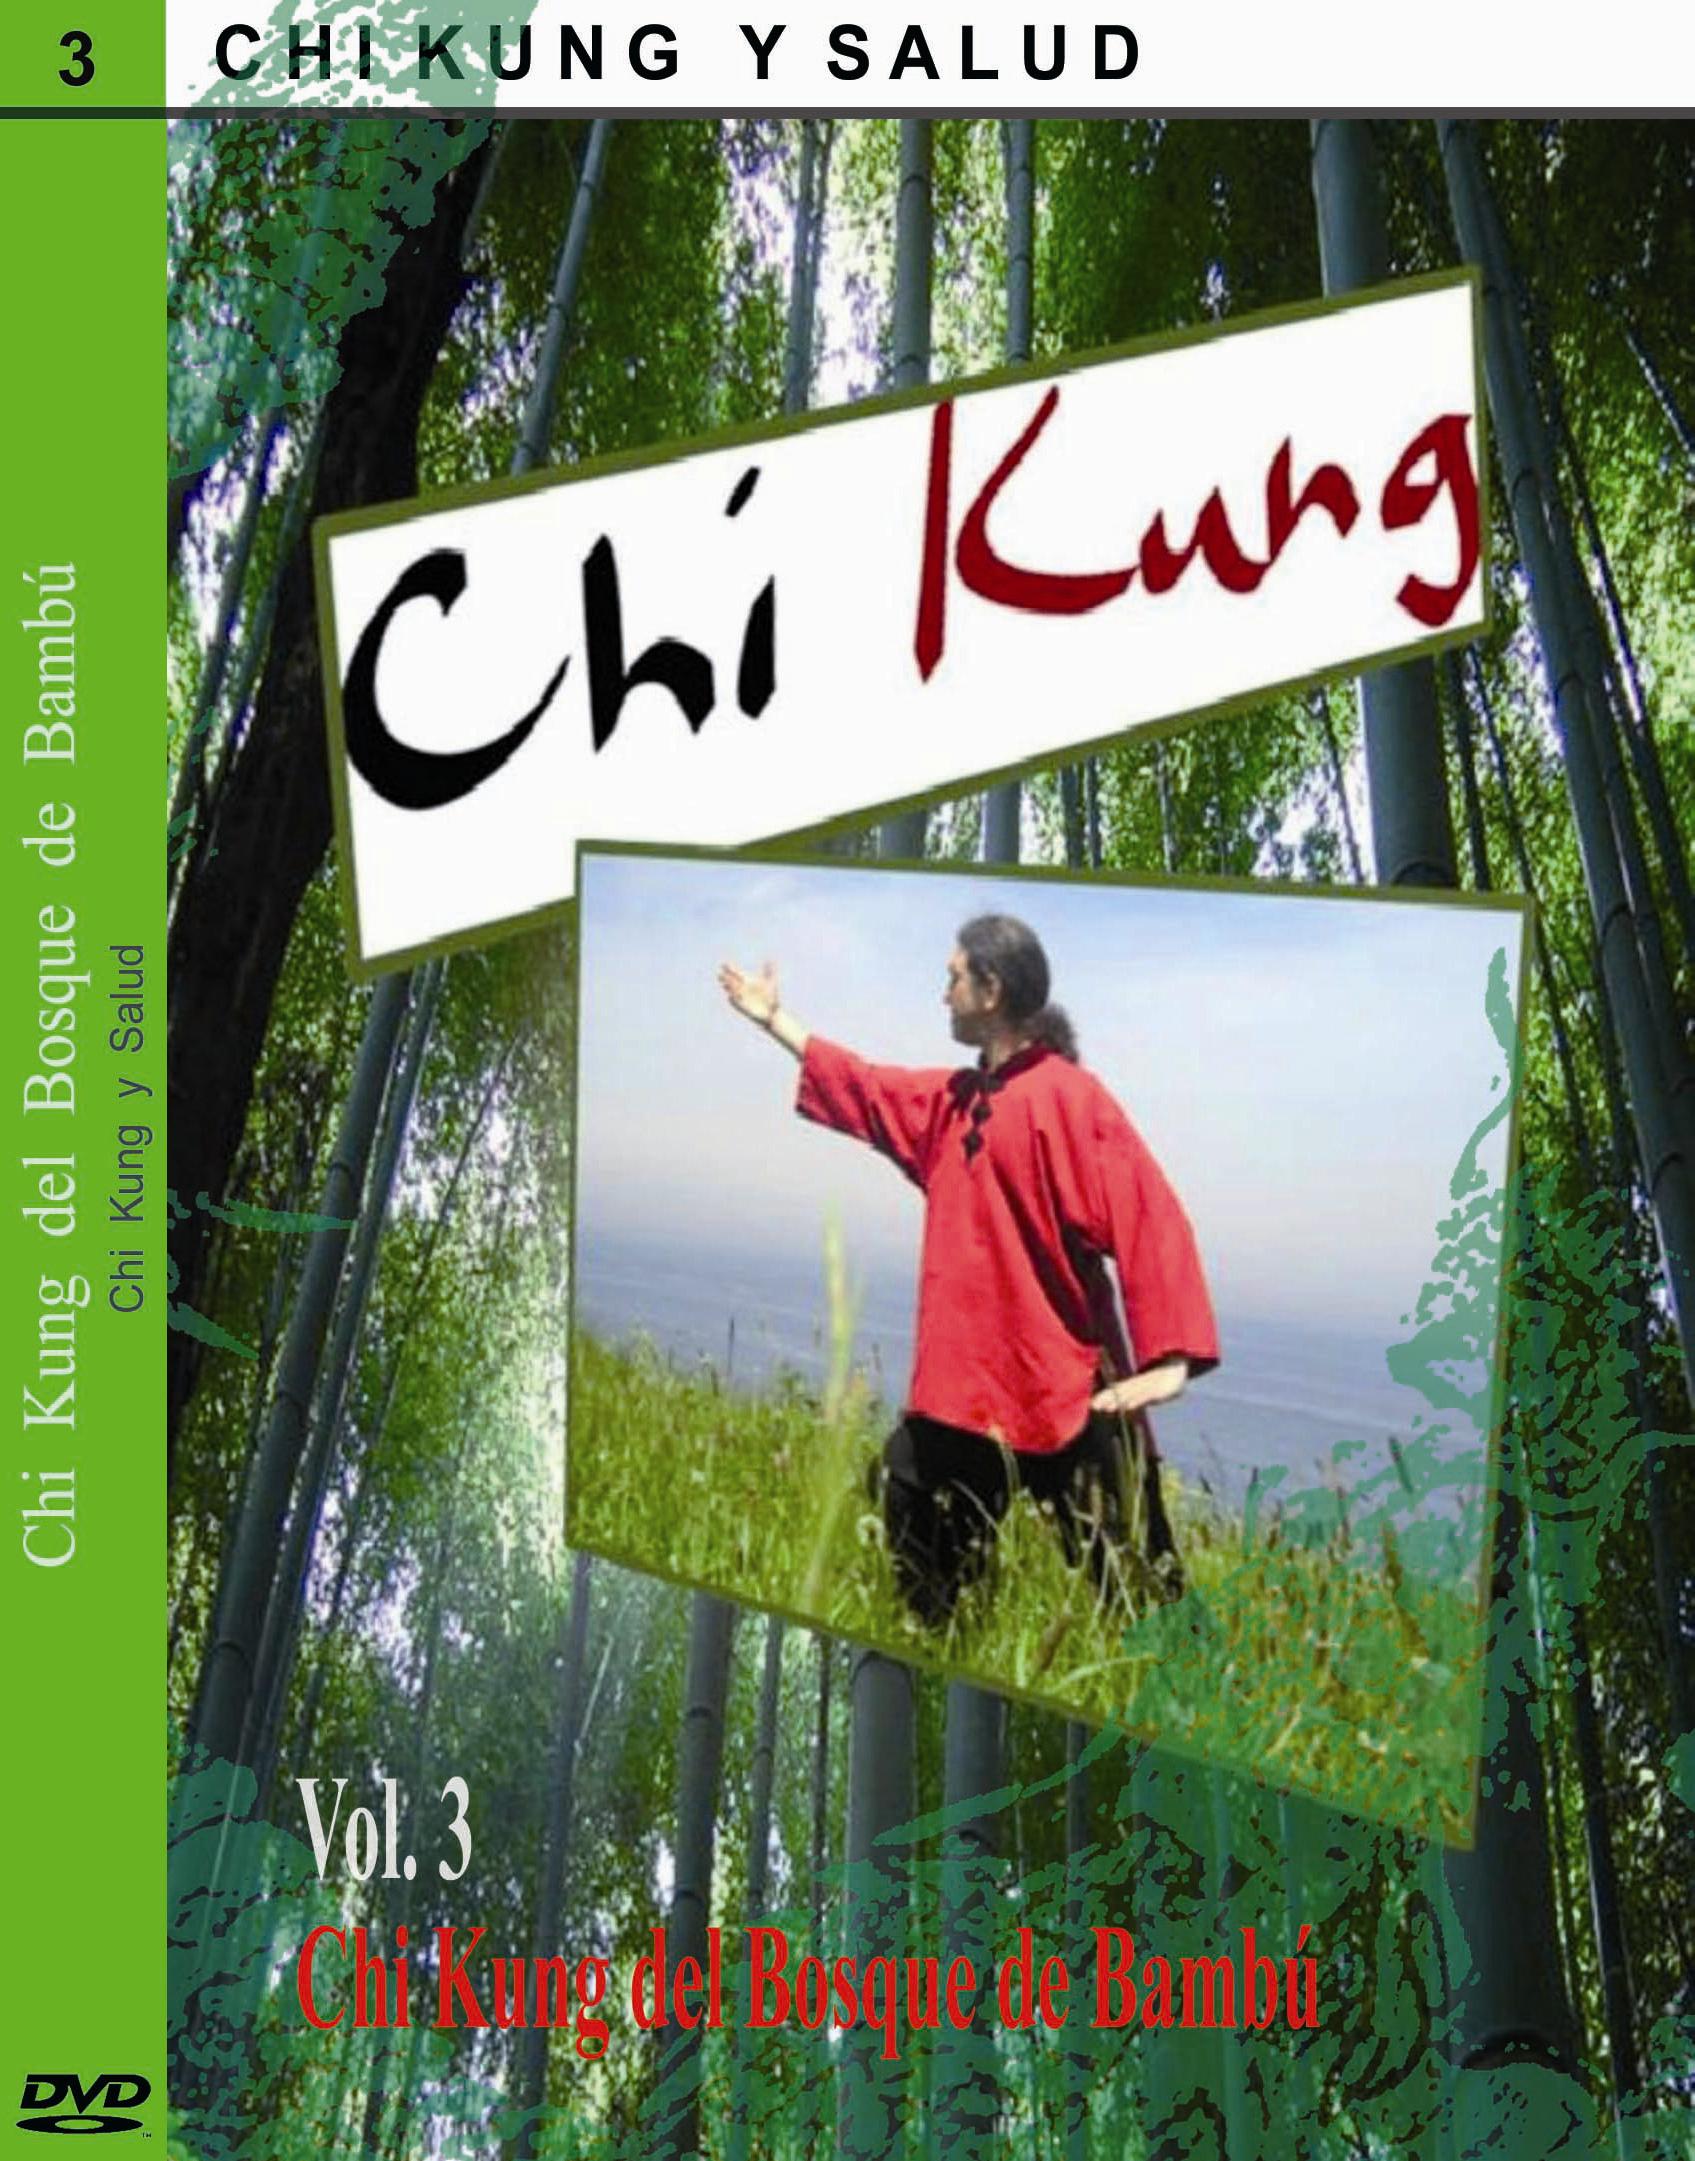 Dvd- Chi Kung y Salud vol. 3 Chi Kung del bosque de bambú.